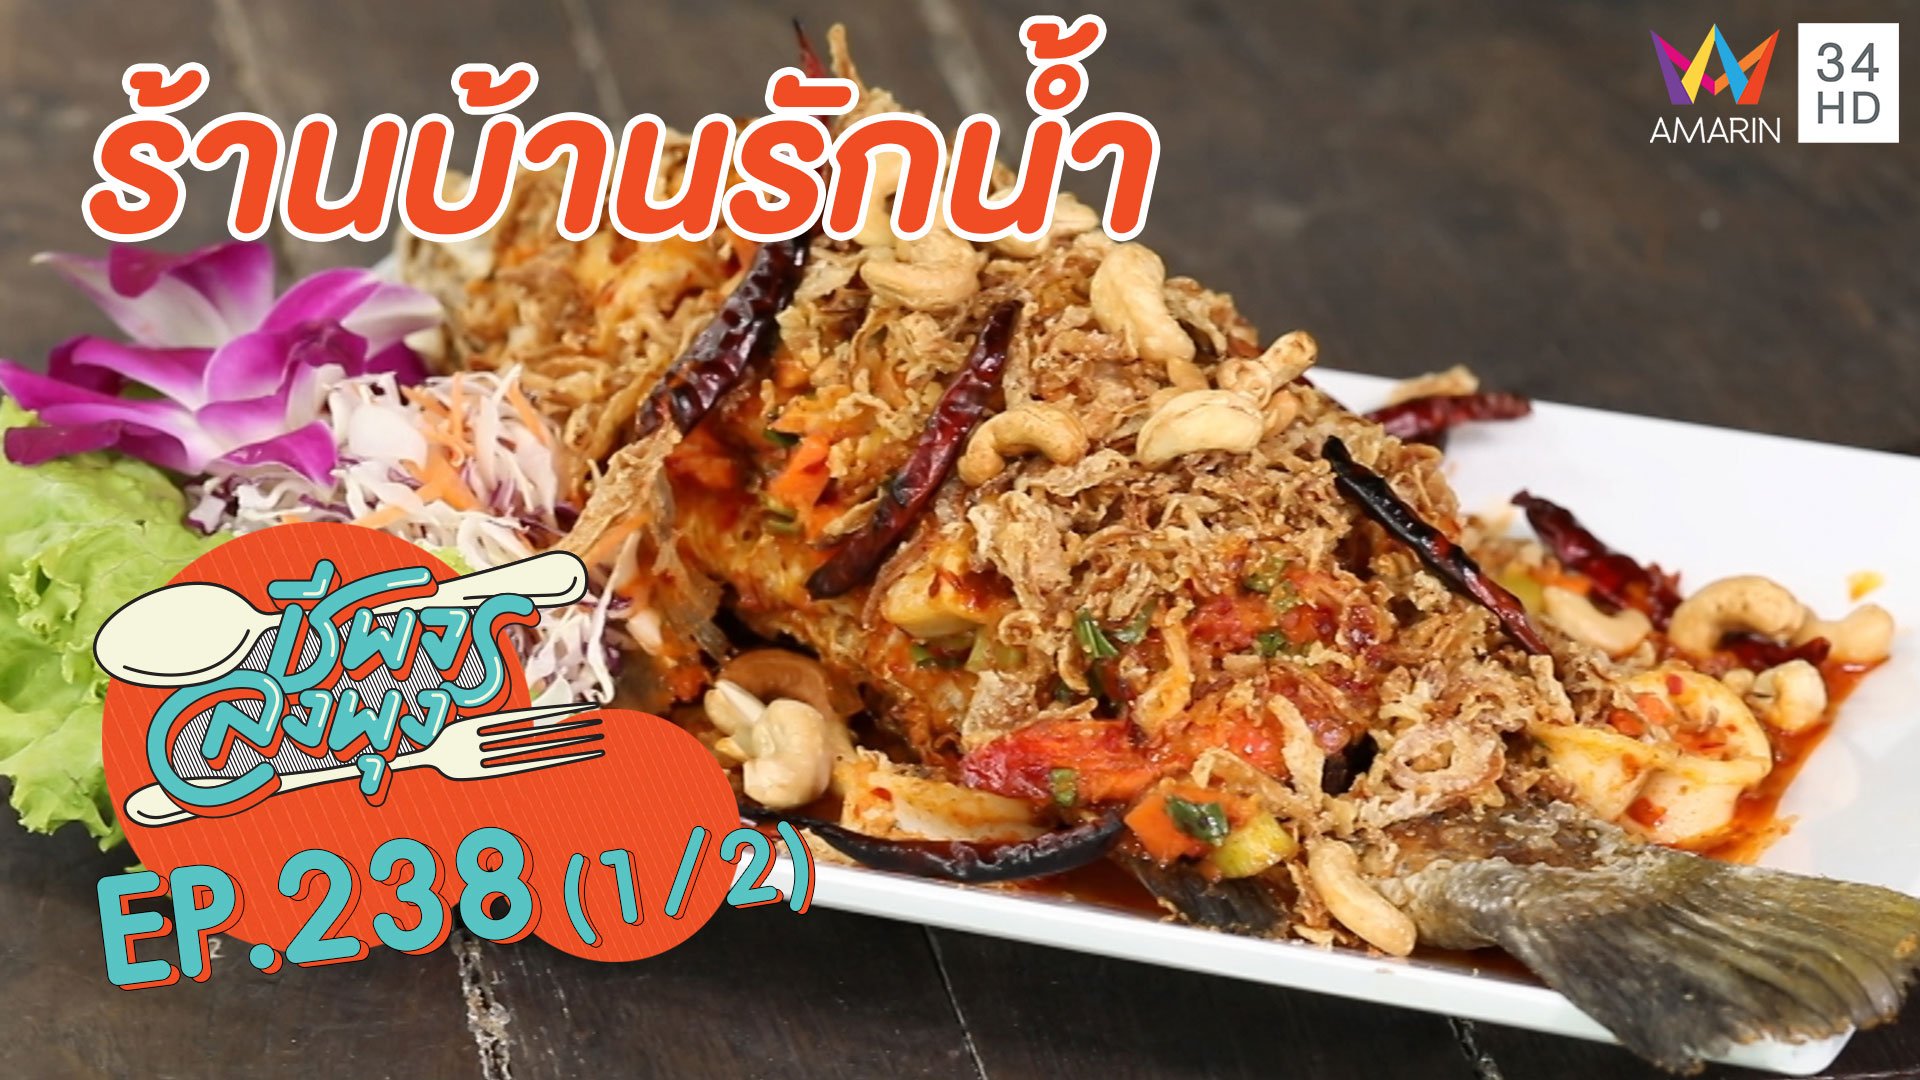 'ร้านบ้านรักน้ำ' อาหารดีบรรยากาศเลิศ | ชีพจรลงพุง | 19 ก.ย. 63 (1/2) | AMARIN TVHD34